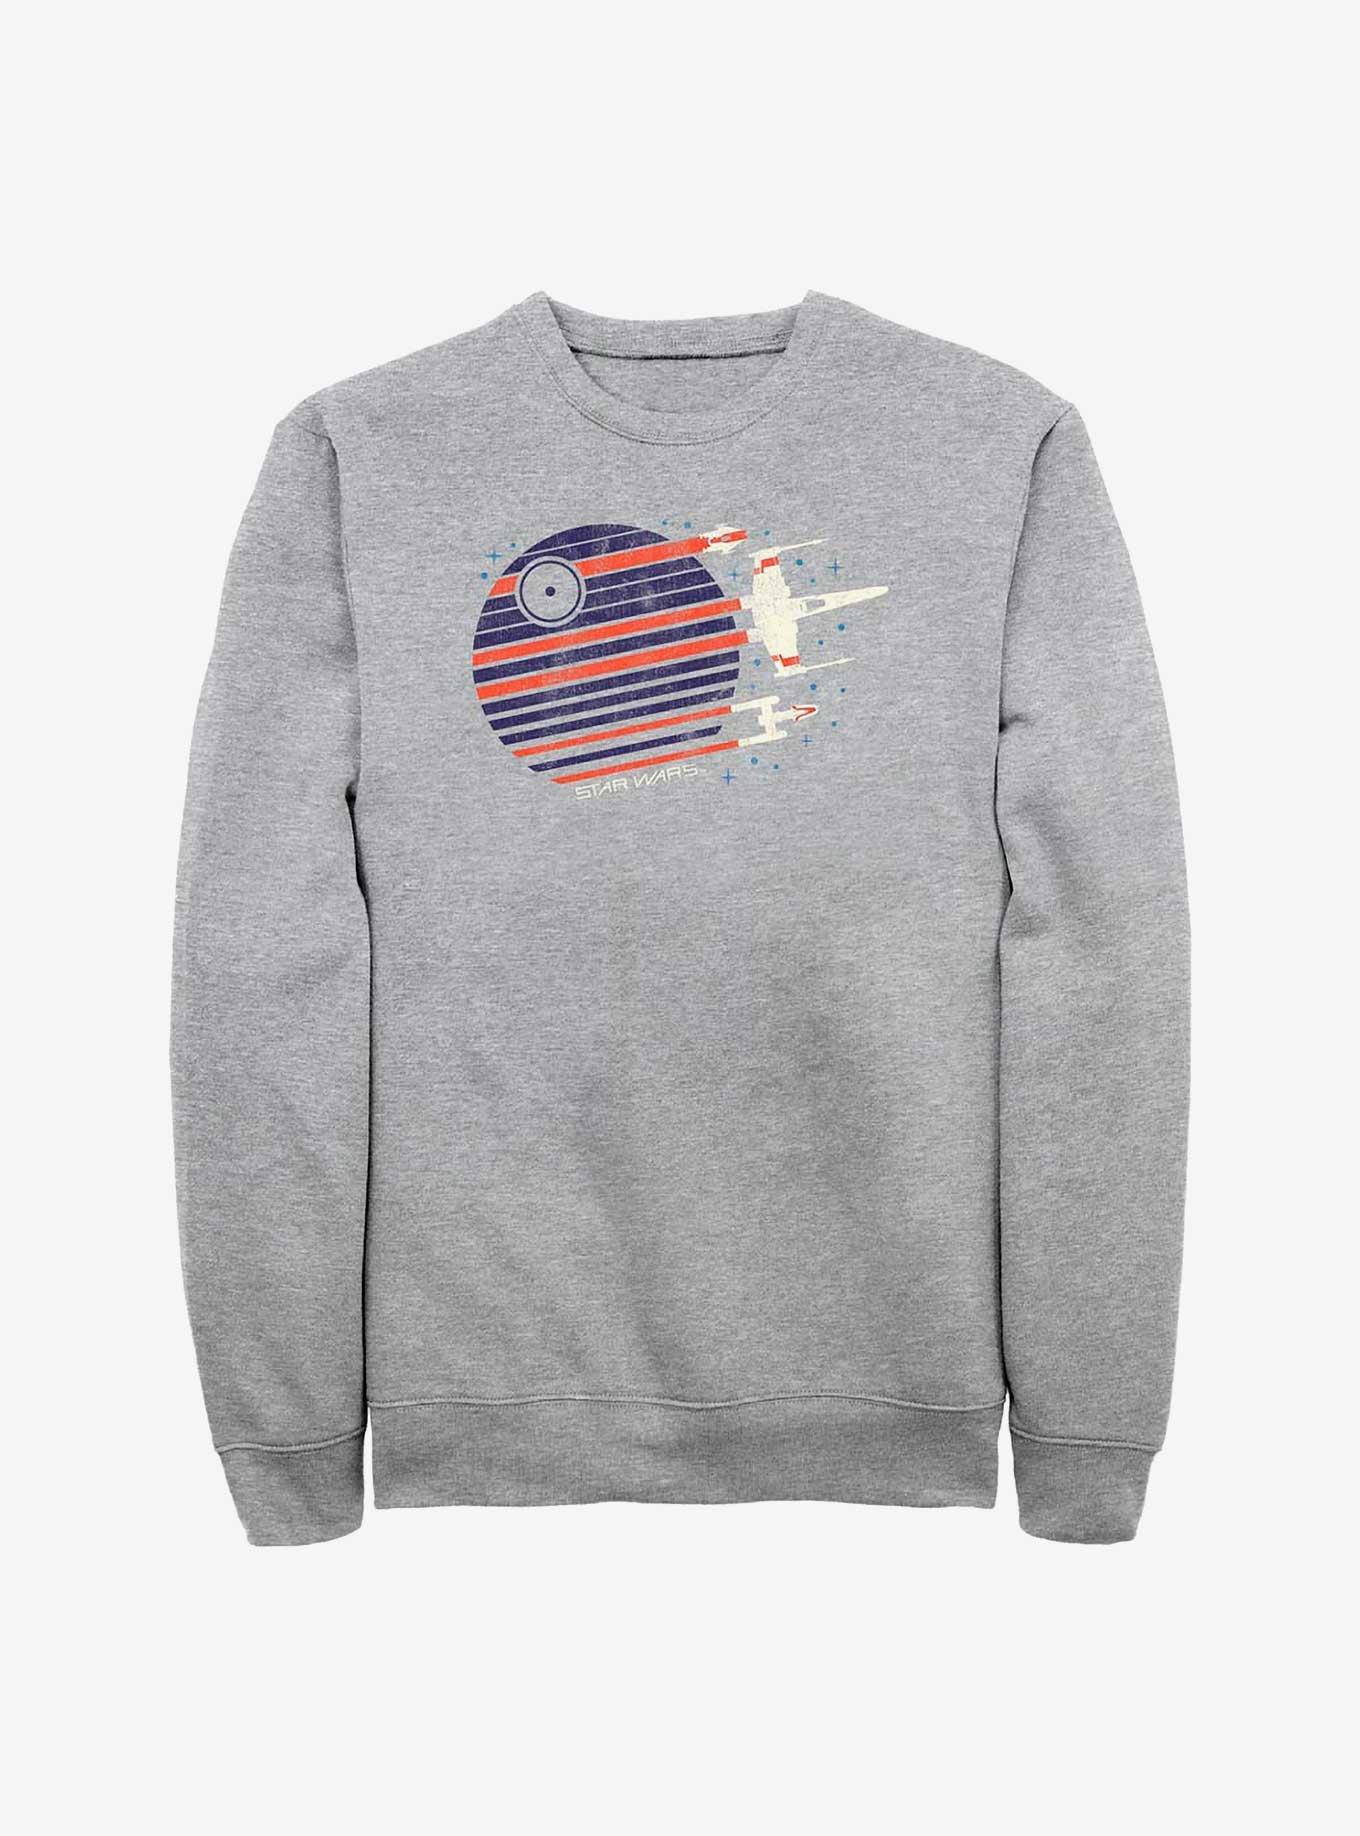 Star Wars Rebel Flyby Sweatshirt, , hi-res